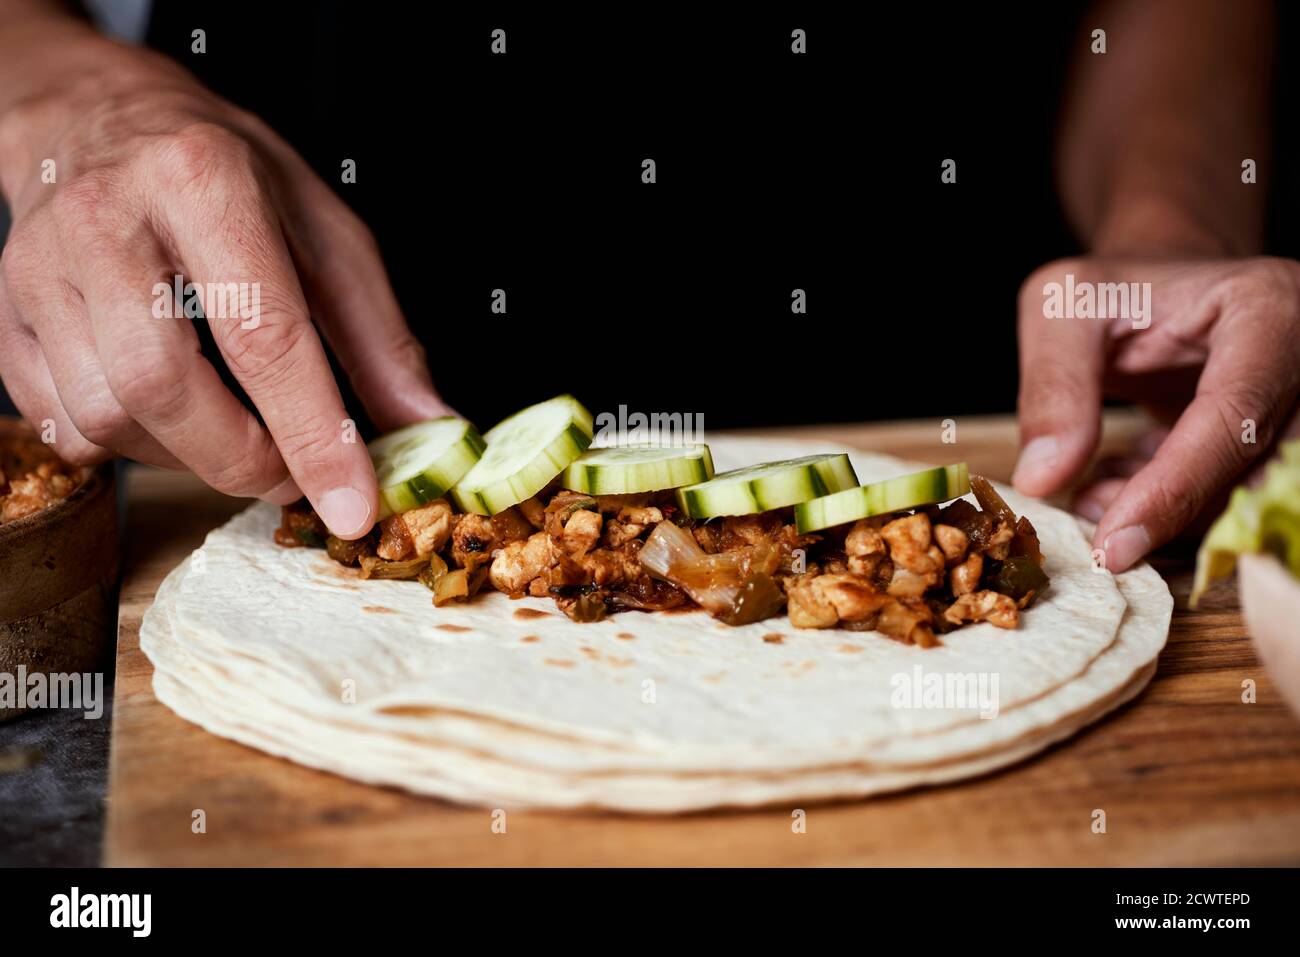 Nahaufnahme eines jungen kaukasischen Mannes, der ein Durum oder einen Burrito zubereitet, mit Hühnerfleisch, das mit verschiedenen Gemüsesorten wie Zwiebeln oder rotem und grünem Pep zubereitet wird Stockfoto